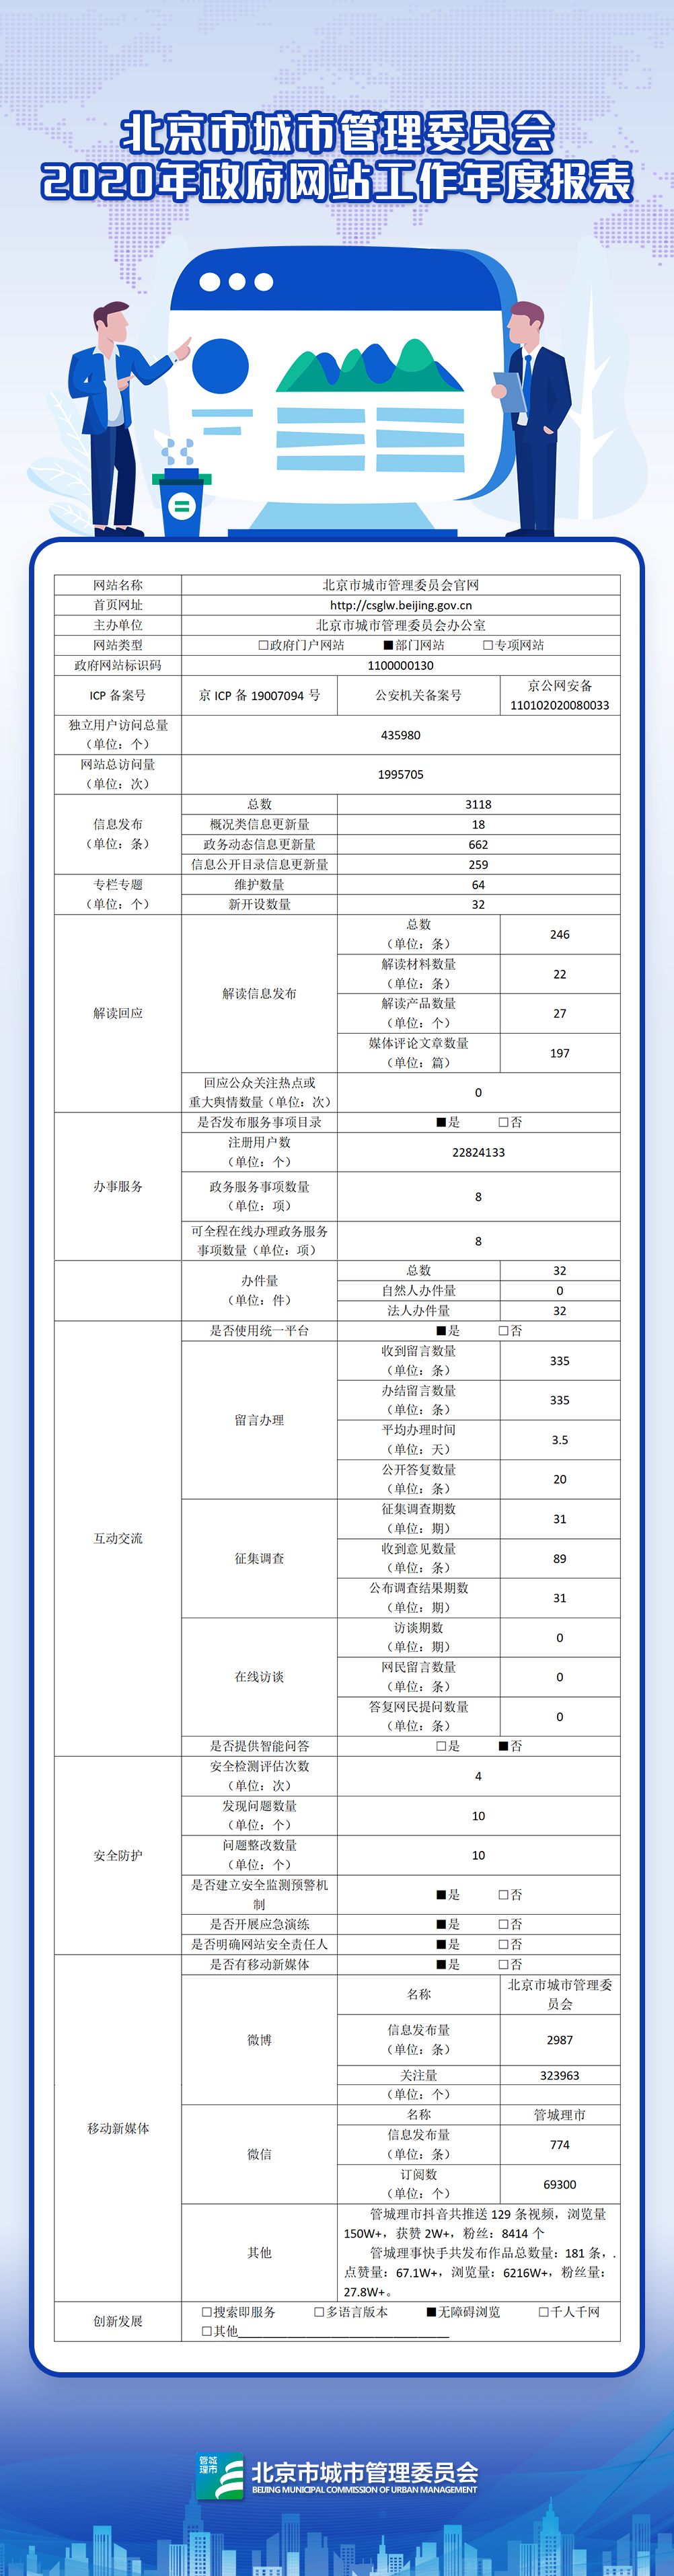 北京市城市管理委員2020年政府網站年度工作報表